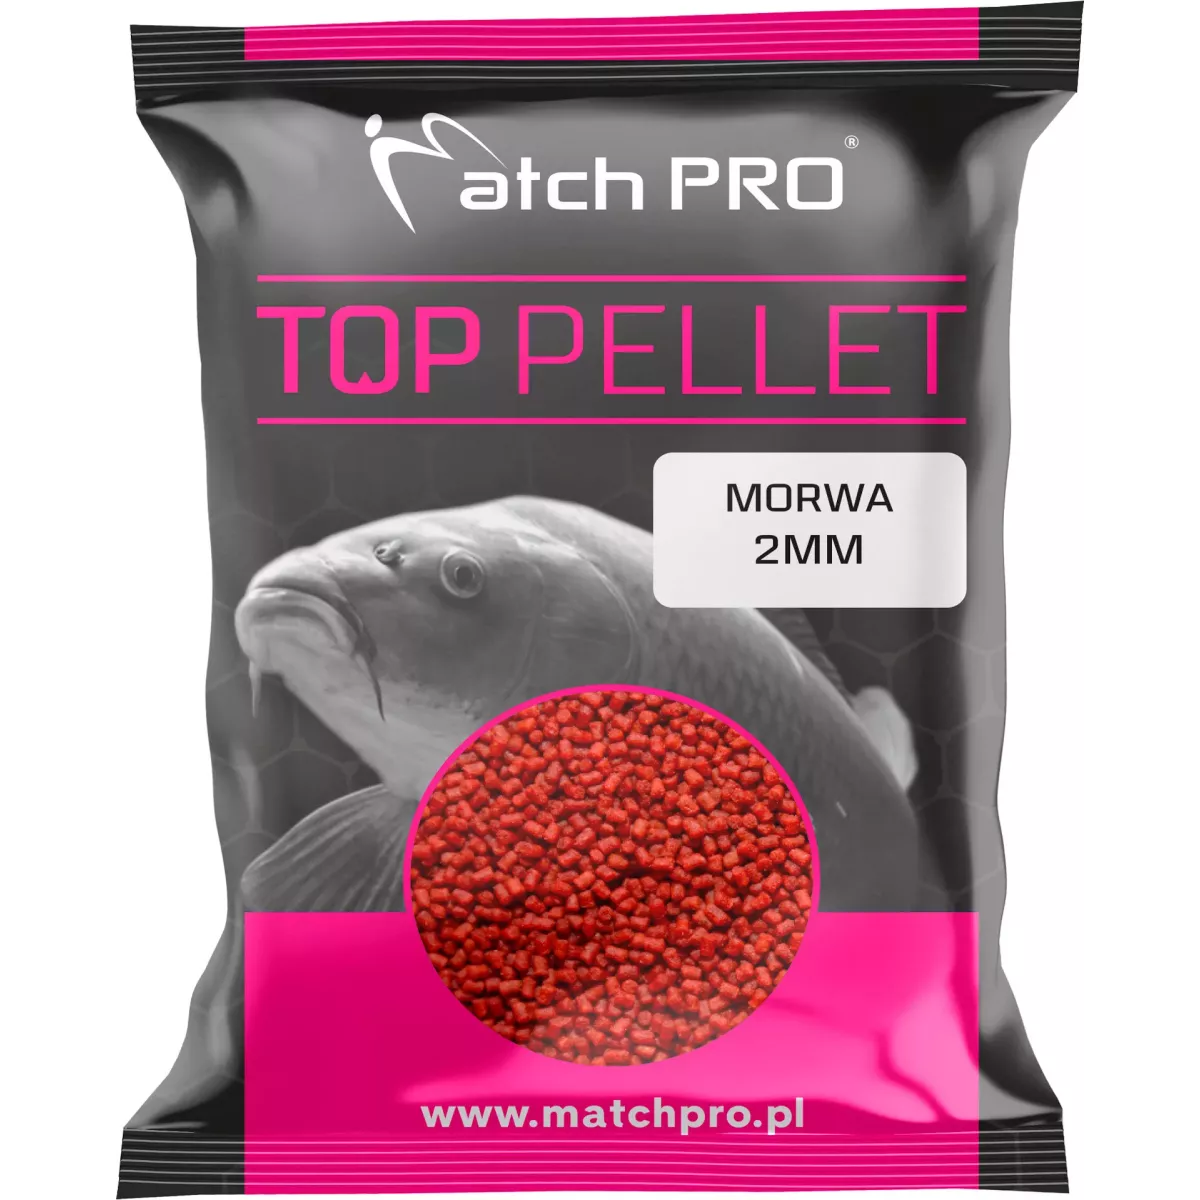 Pellet MatchPro TOP 2mm - MORWA